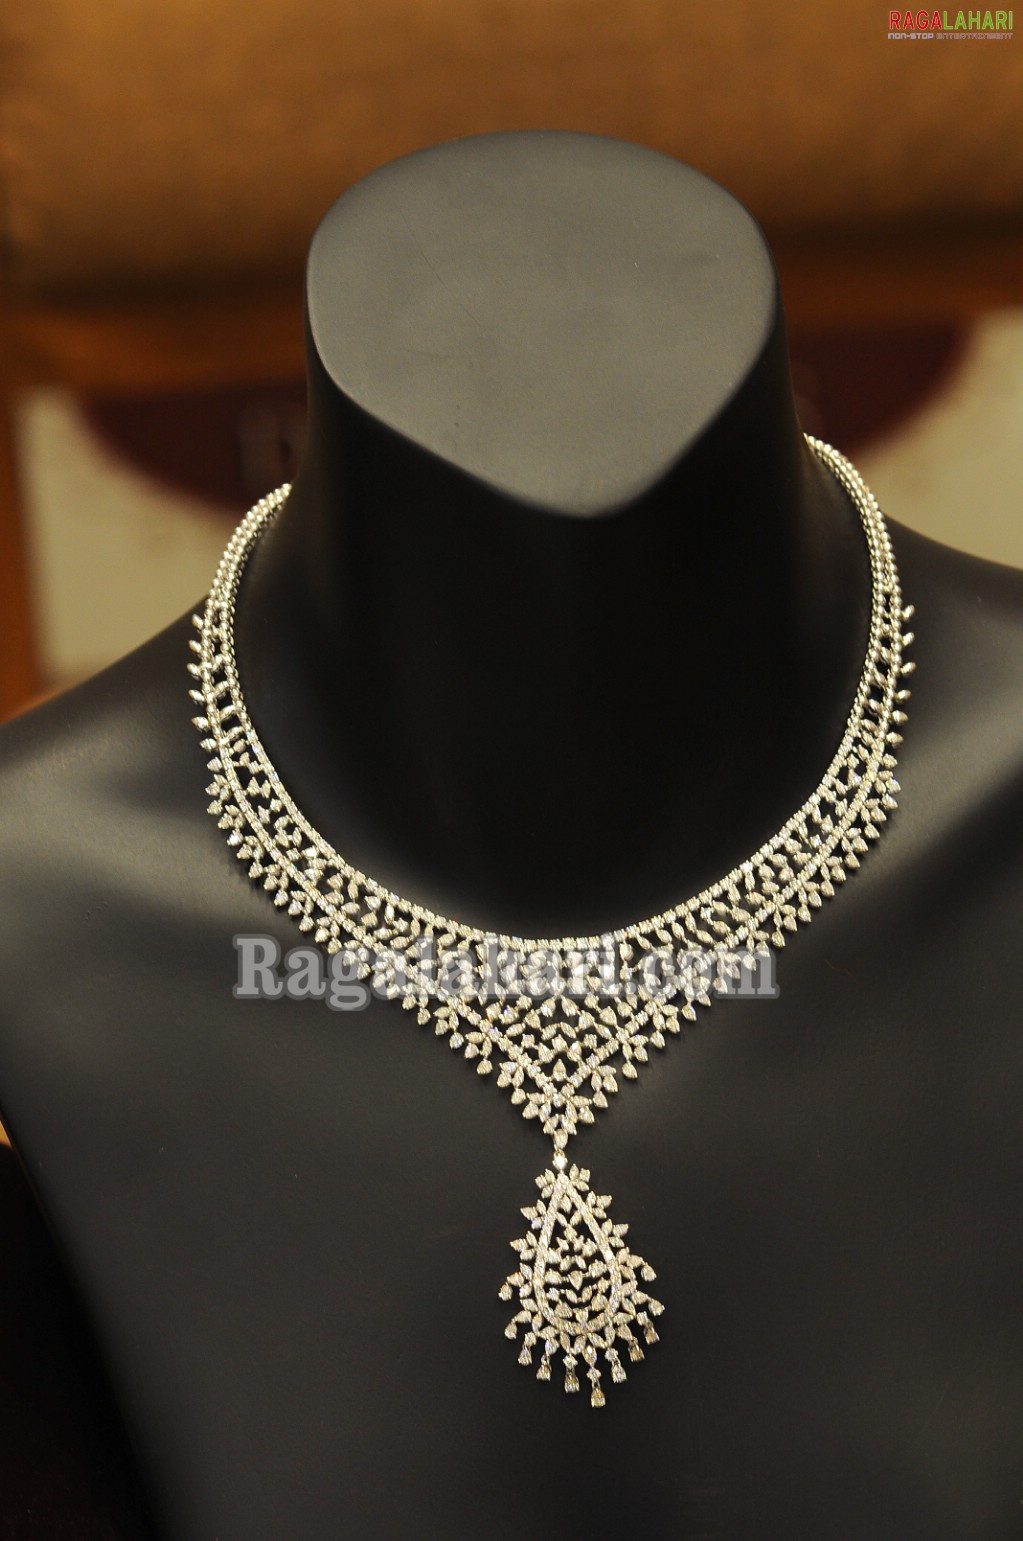 Tanishq Jewellers 'Queen of Diamond 2010' Bumper Draw